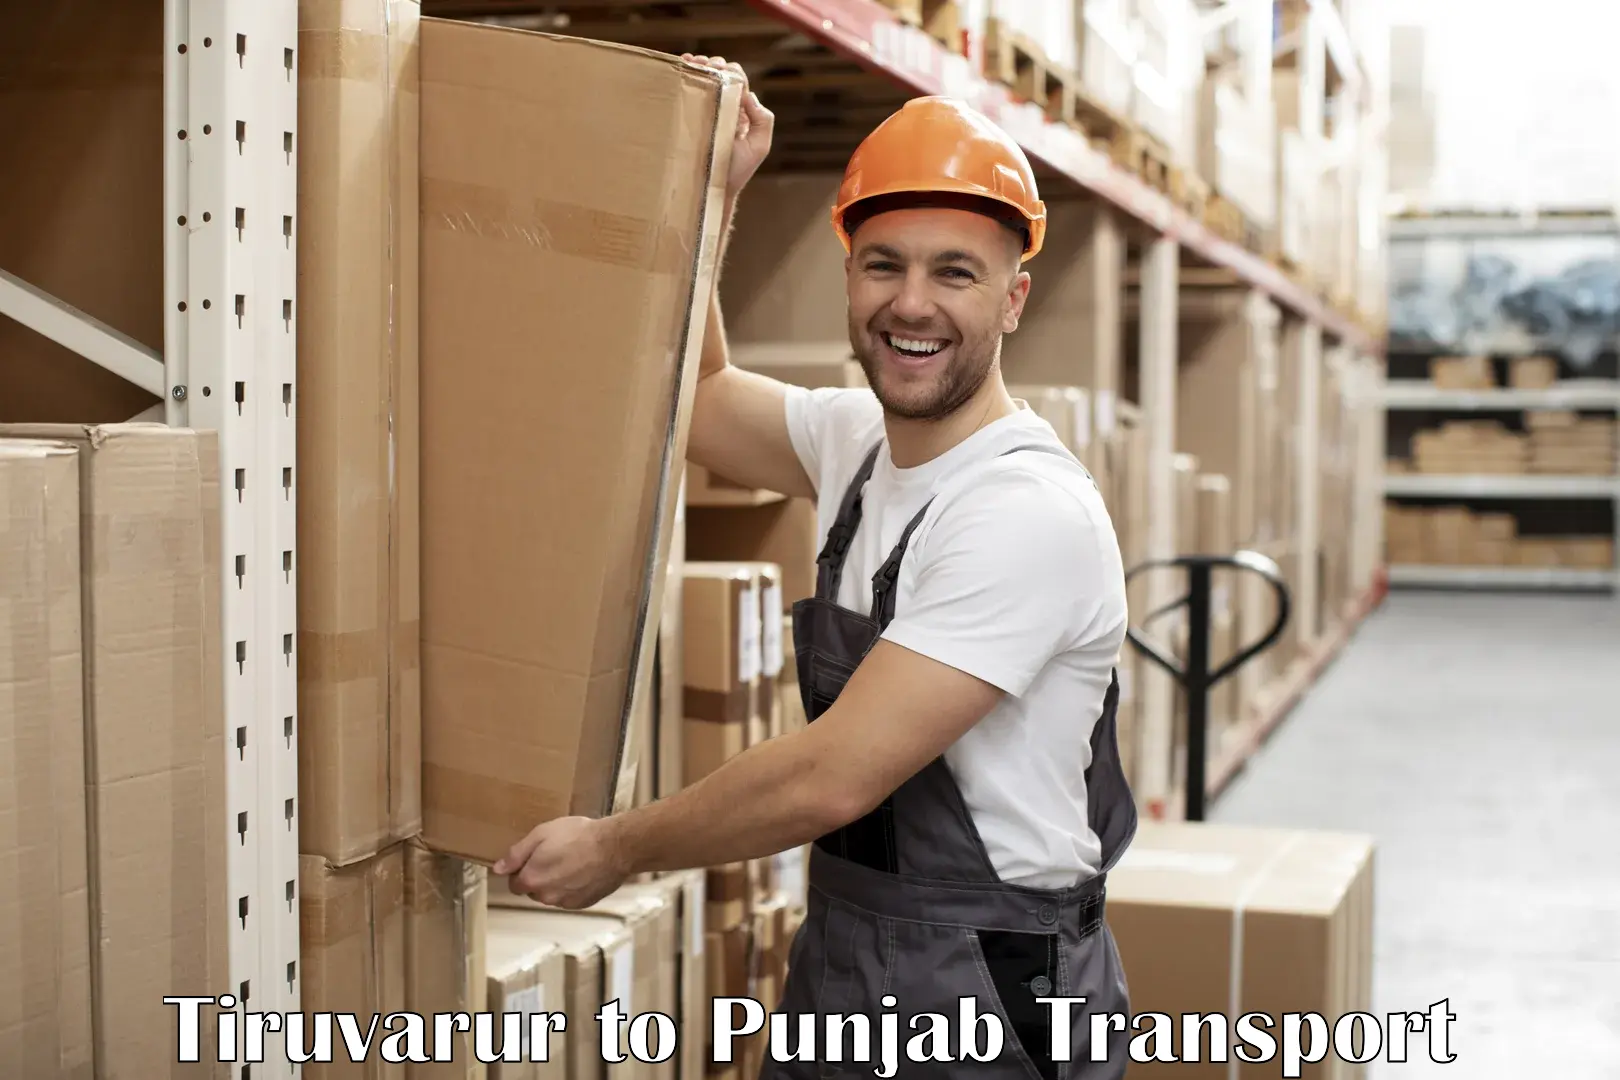 Express transport services in Tiruvarur to Punjab